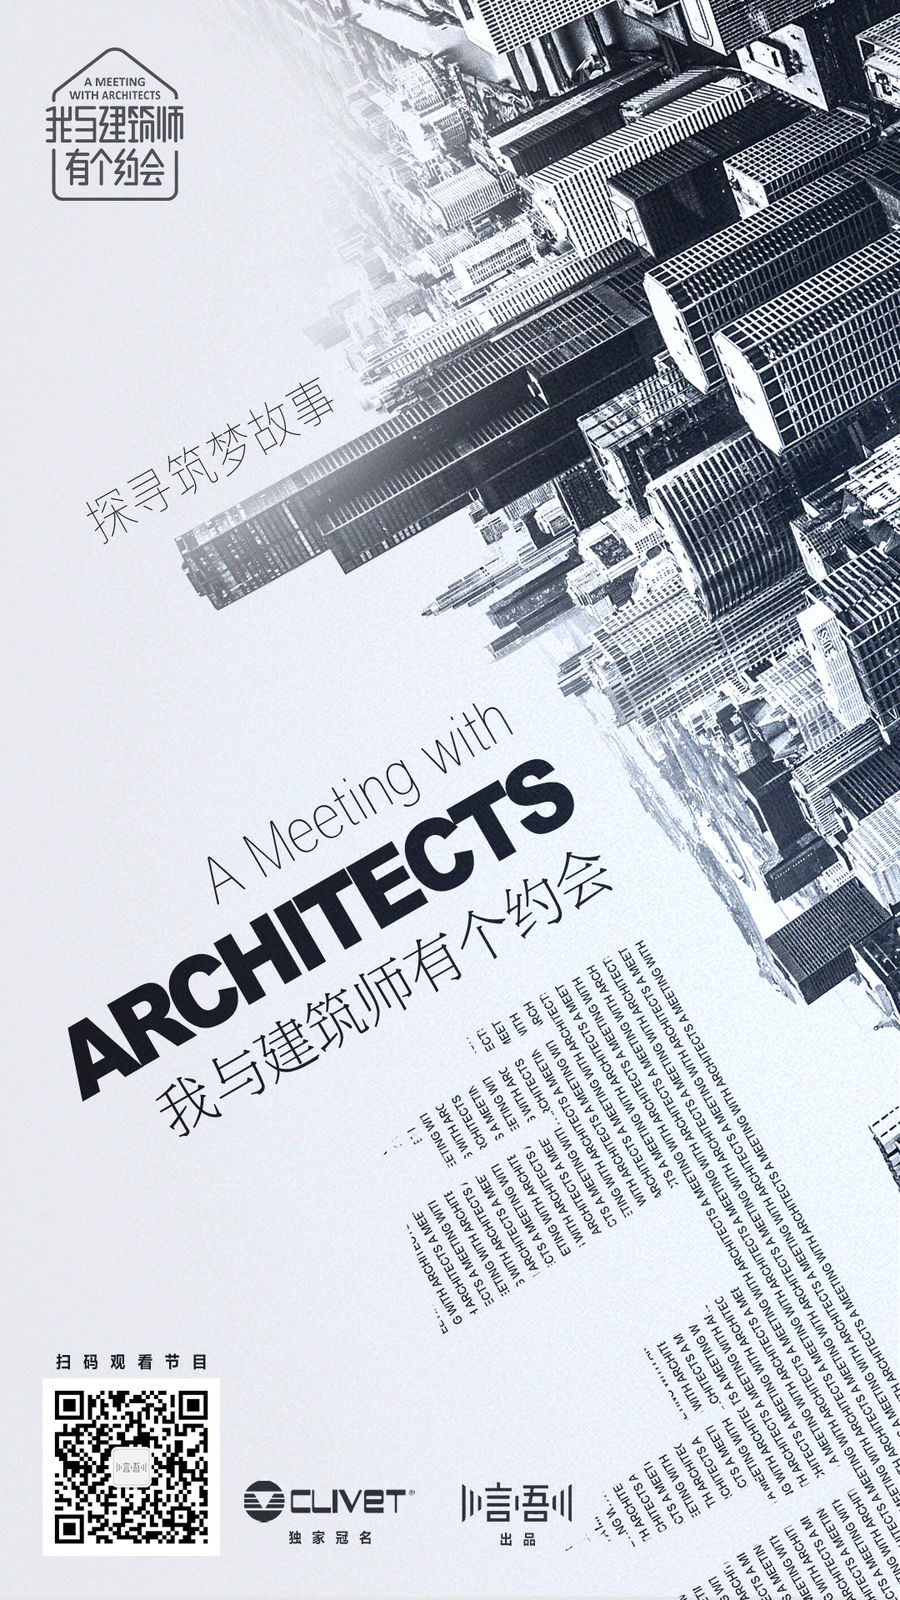 《我与建筑师有个约会》系列视频之 摩西萨夫迪 ：从建筑的另一个维度寻找未来